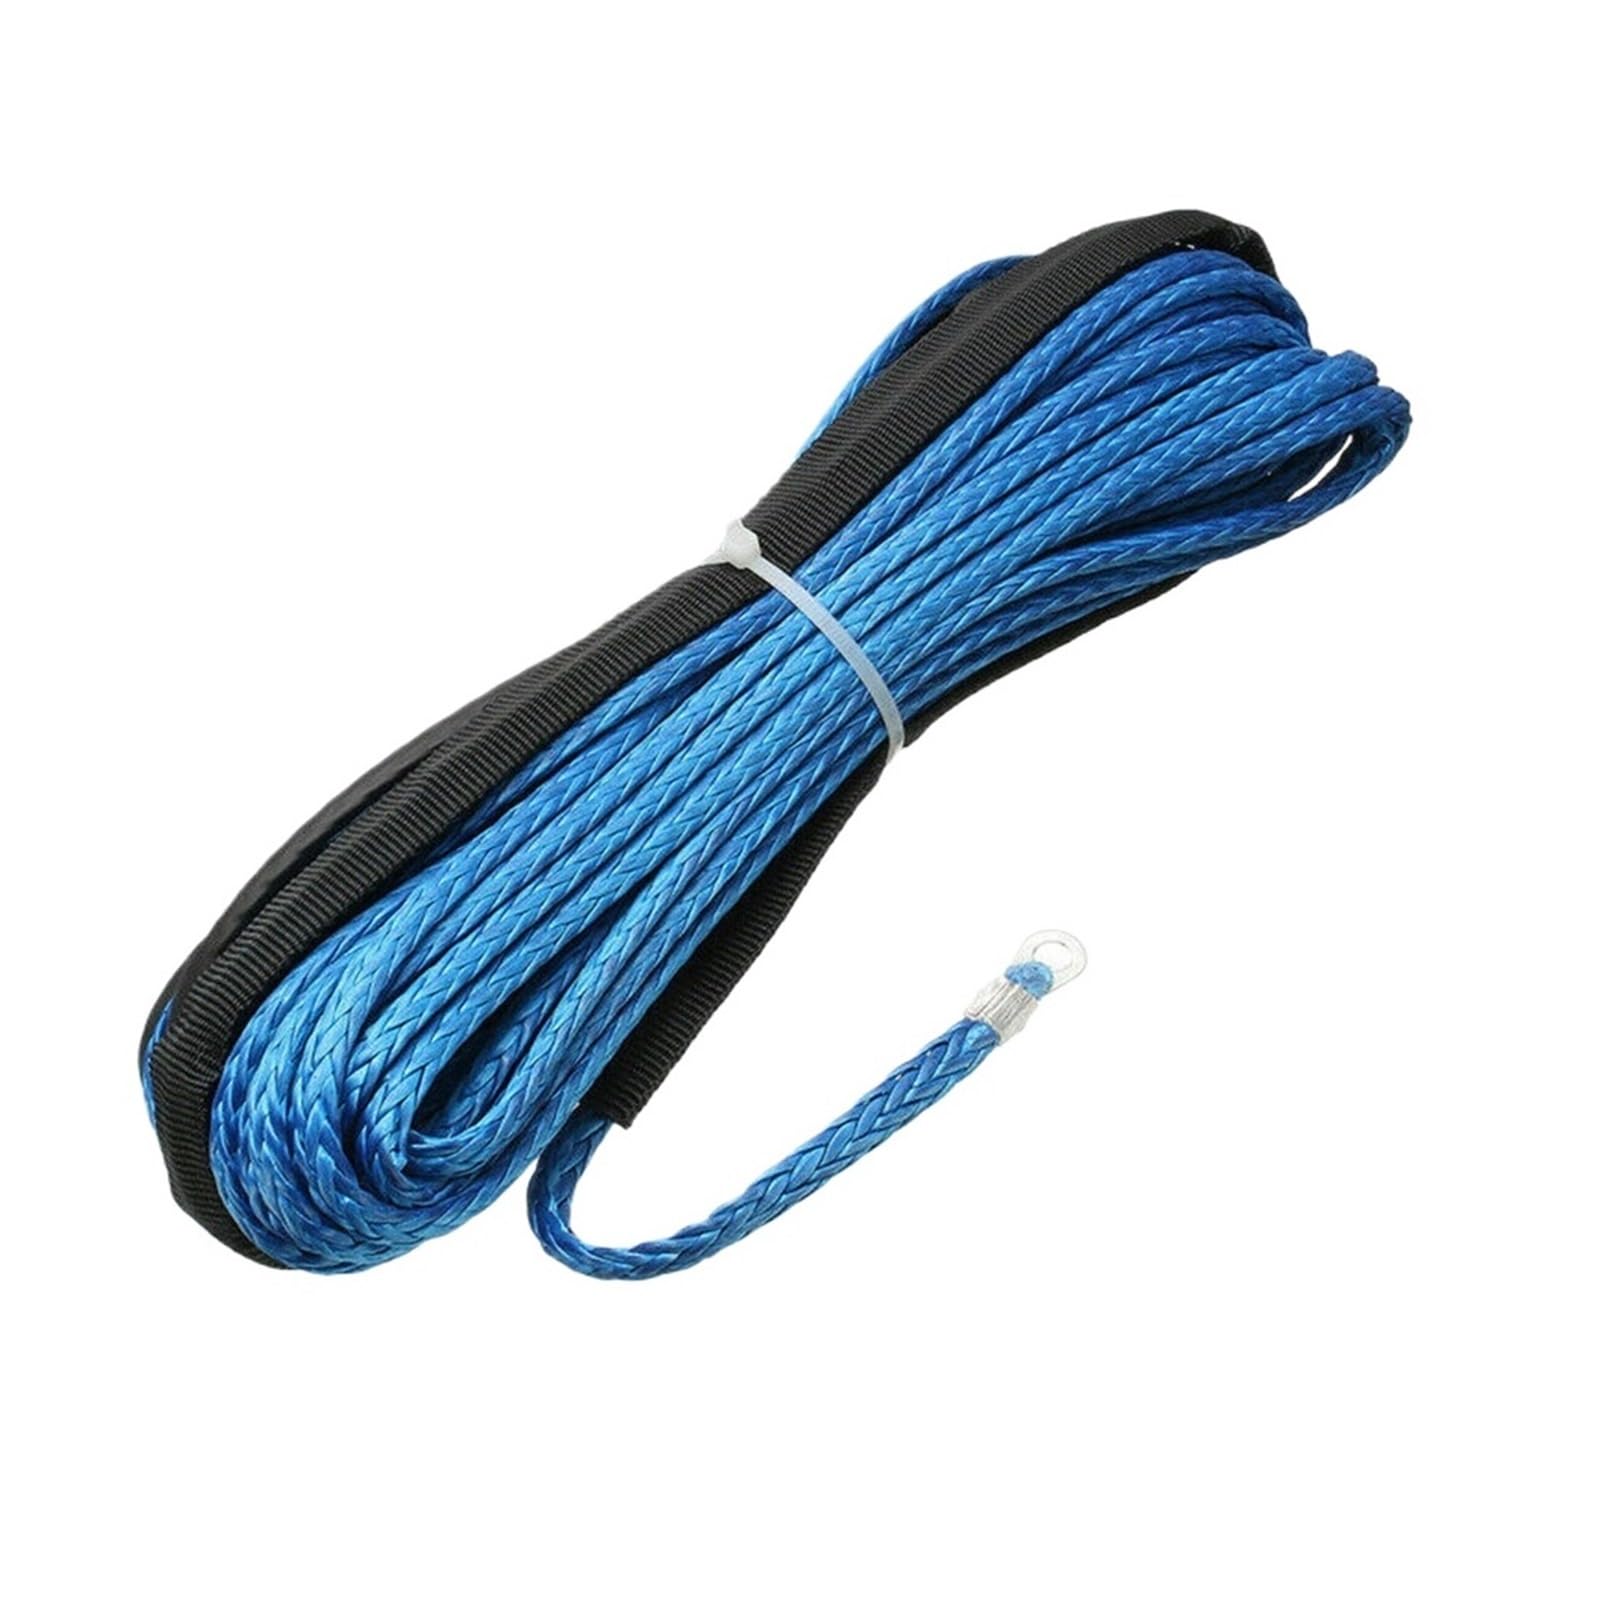 String Line-Kabel 7700LBs Synthetisches Abschleppseil 15M Autowasch-Wartungsschnur Synthetisches Windenseil for ATV UTV Offroad(Blue) von nmbhus